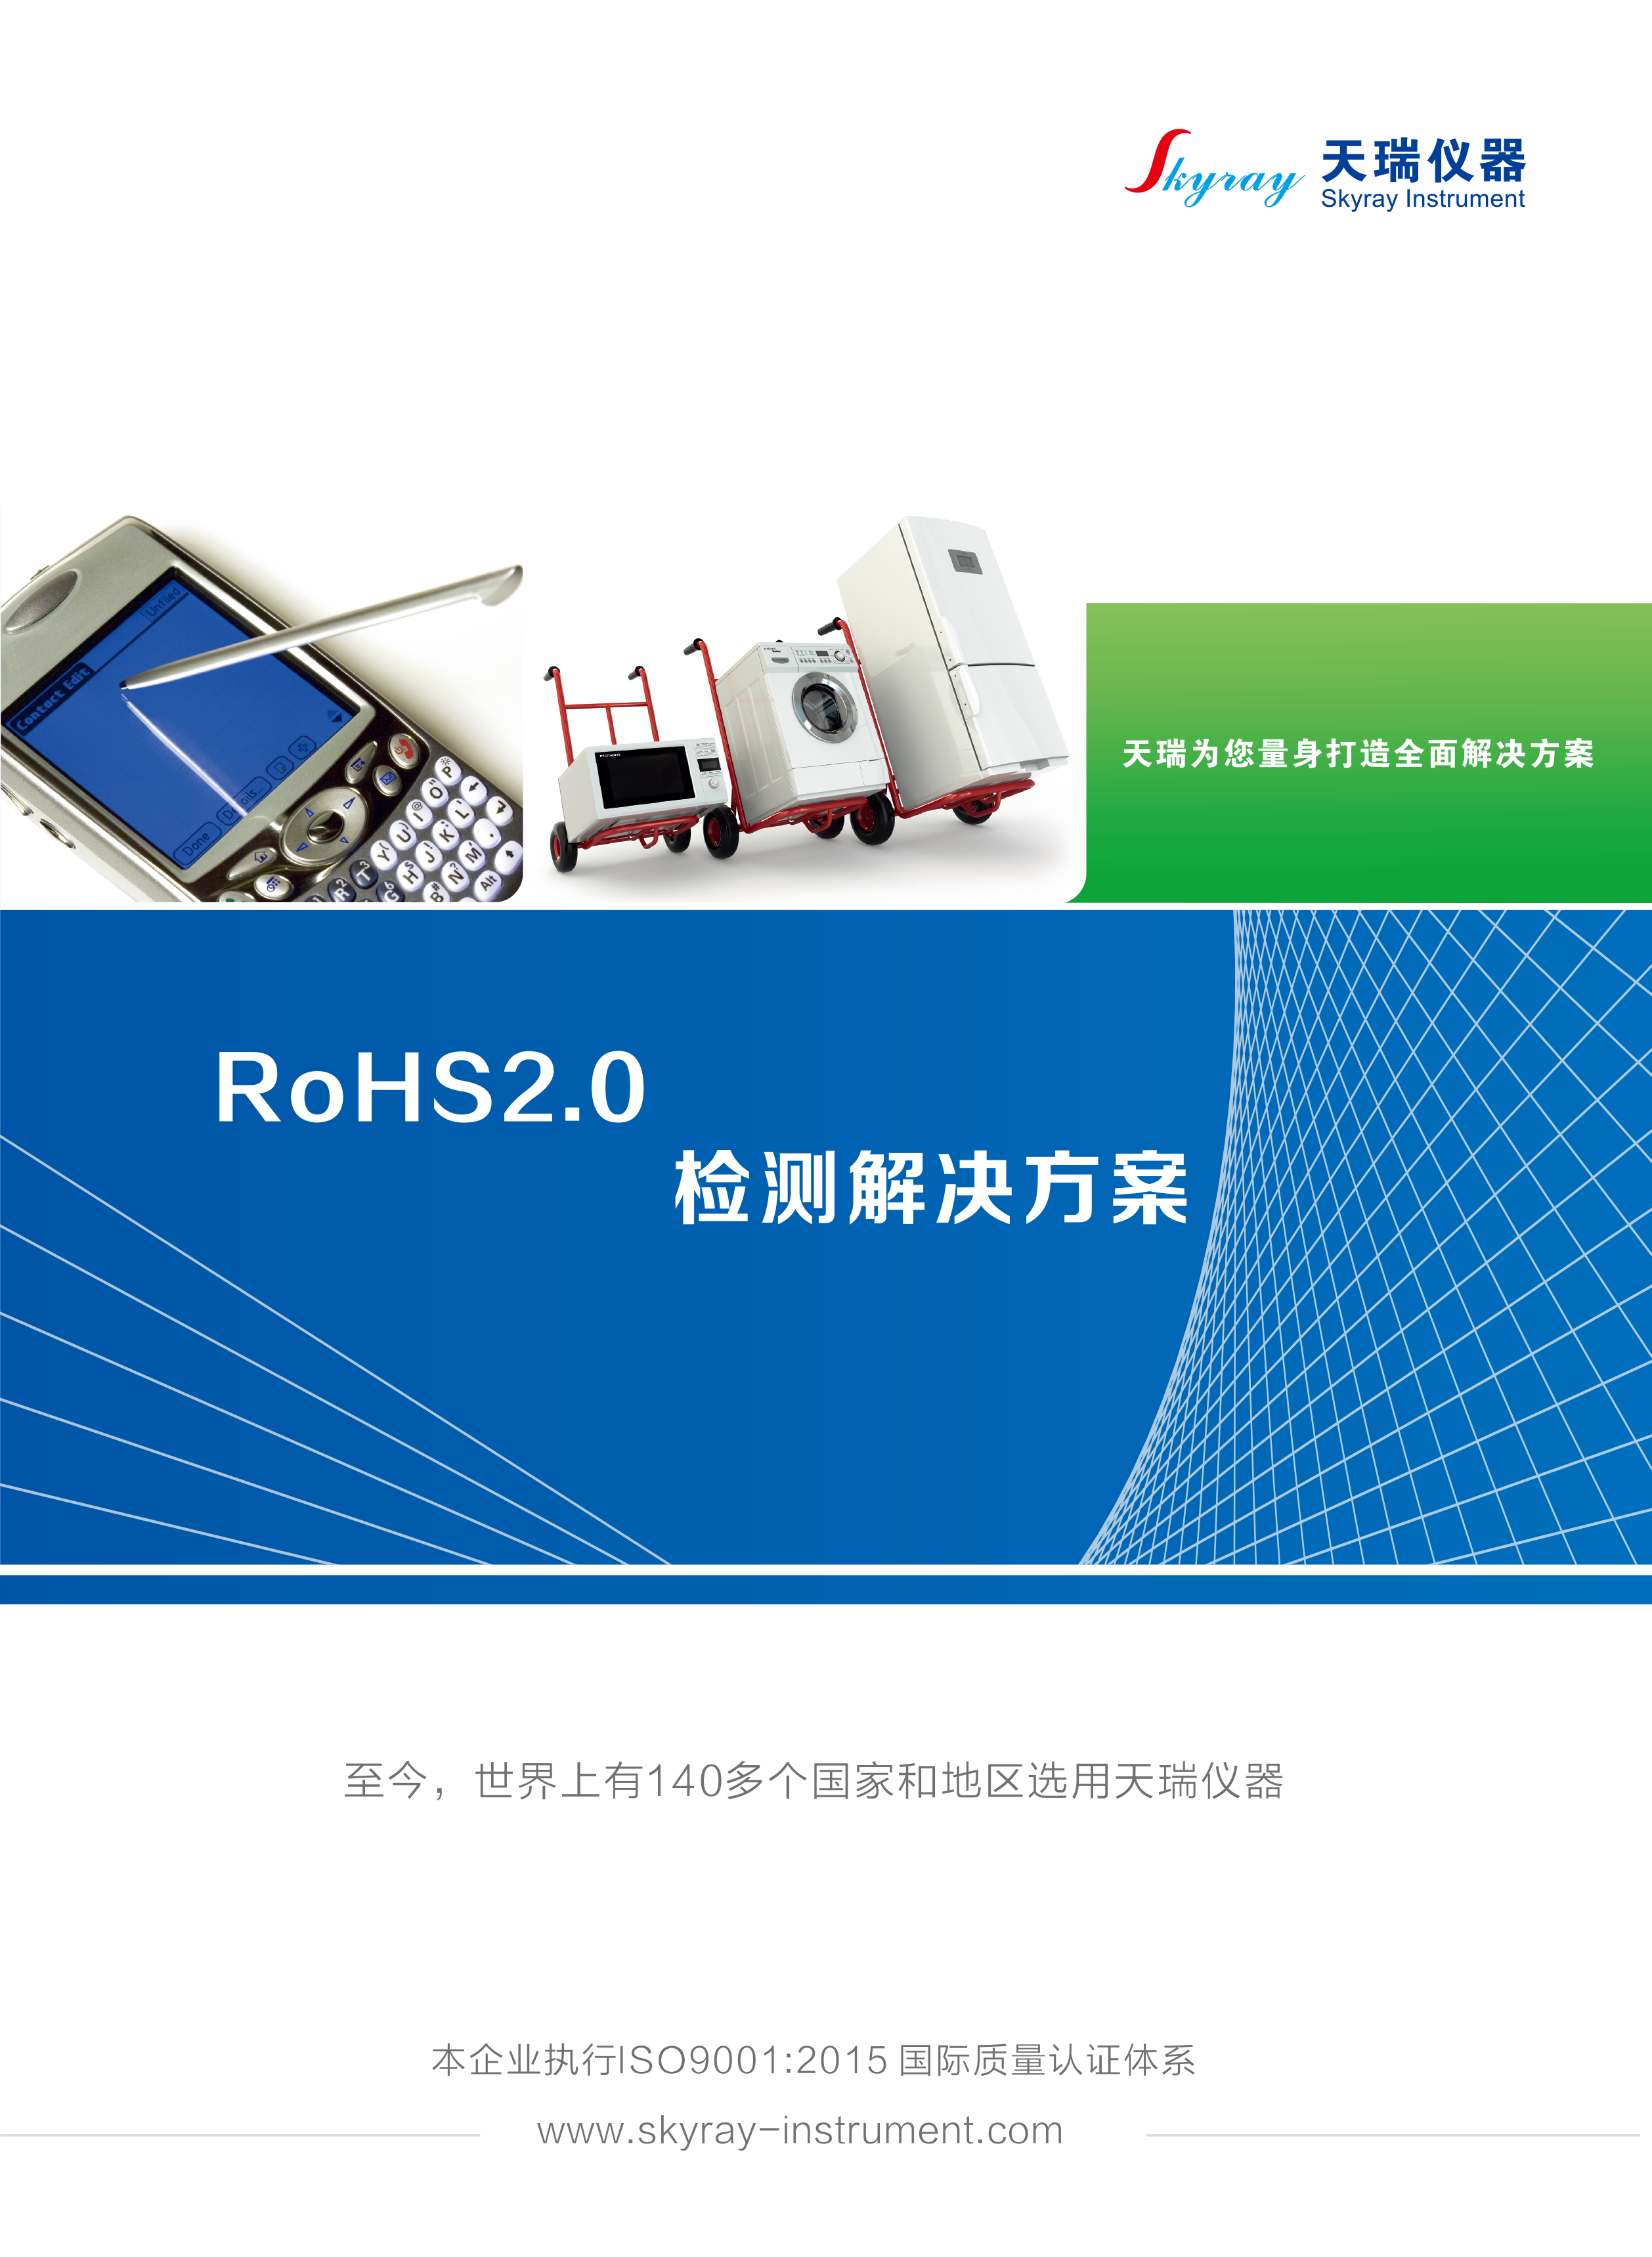 江苏天瑞仪器股份有限公司-RoHS2.0检测解决方案(综合）